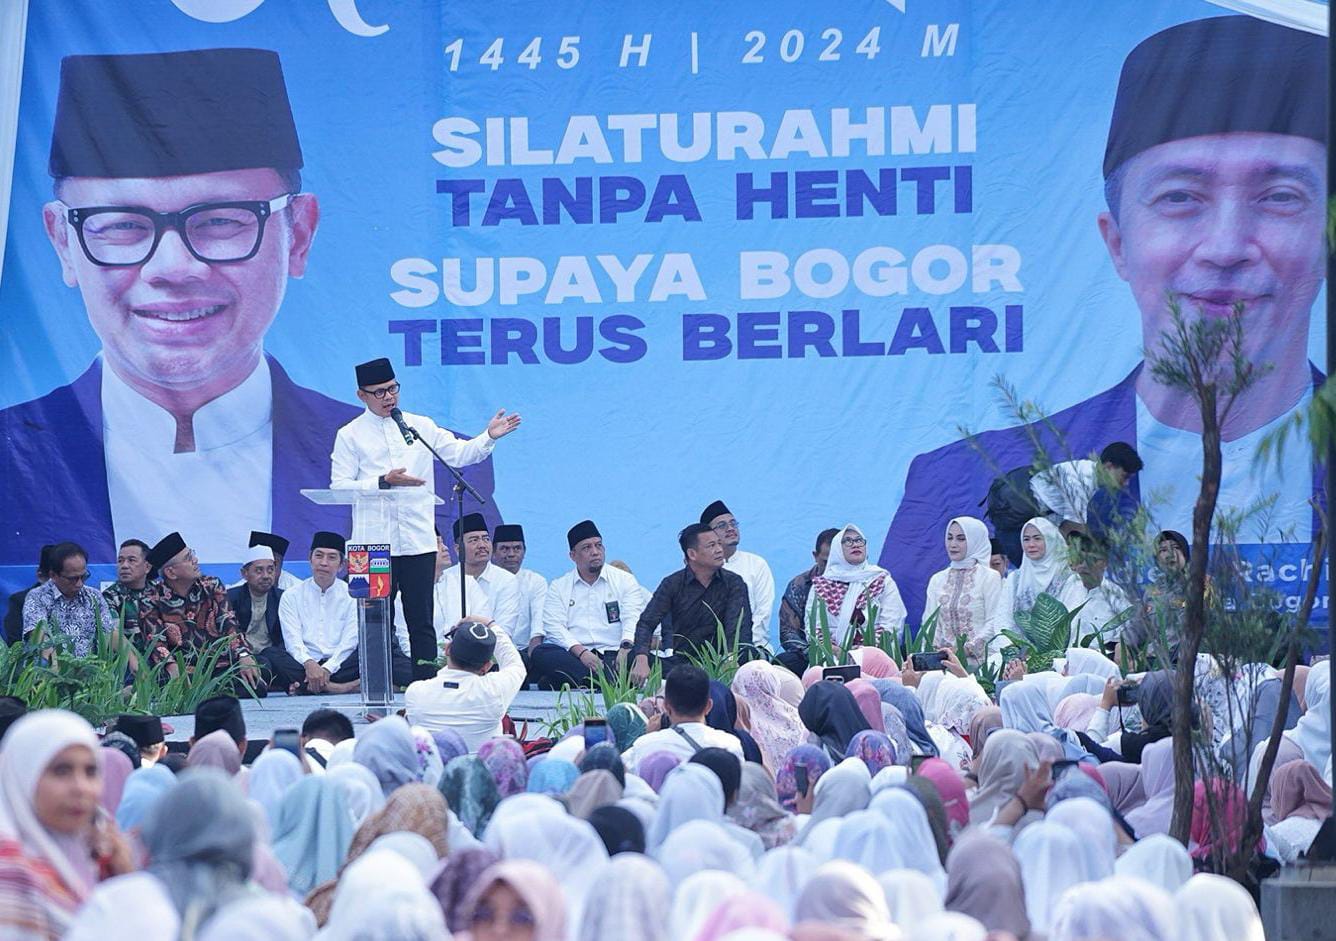 Wali Kota Bogor, Bima Arya dalam momen Halal Bihalal yang digelar Pemerintah Kota Bogor, Selasa (16/4). (Yudha Prananda / Kabar Ekspres)